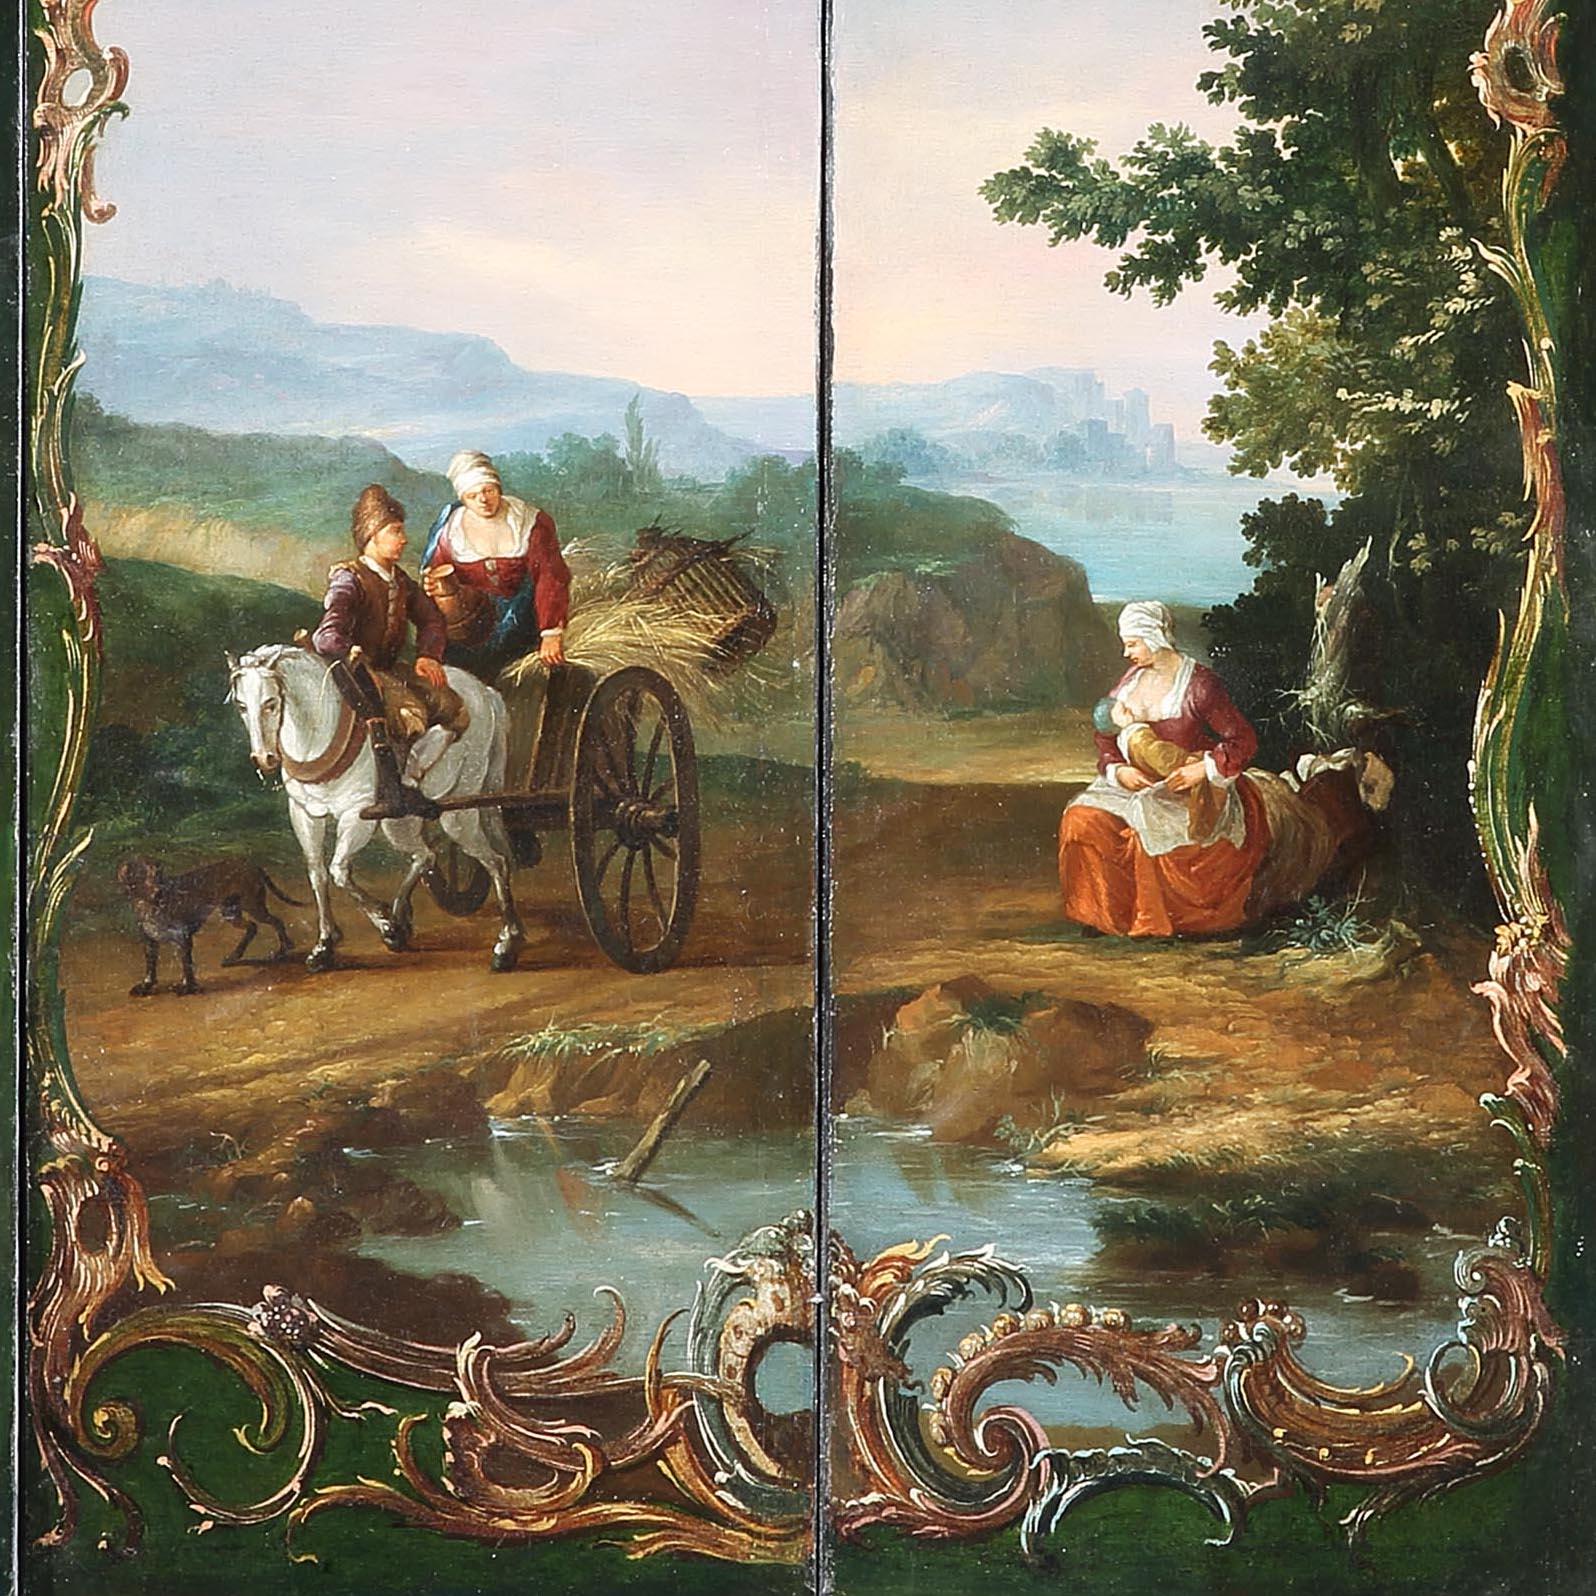 Paravent à six panneaux de la fin de la période baroque

Huile sur toile, représentant une vue panoramique d'un paysage d'Europe du Nord à Capriccio, peut-être le Schlesweig-Holstein, avec des vues lointaines de la mer, des châteaux en ruine, des